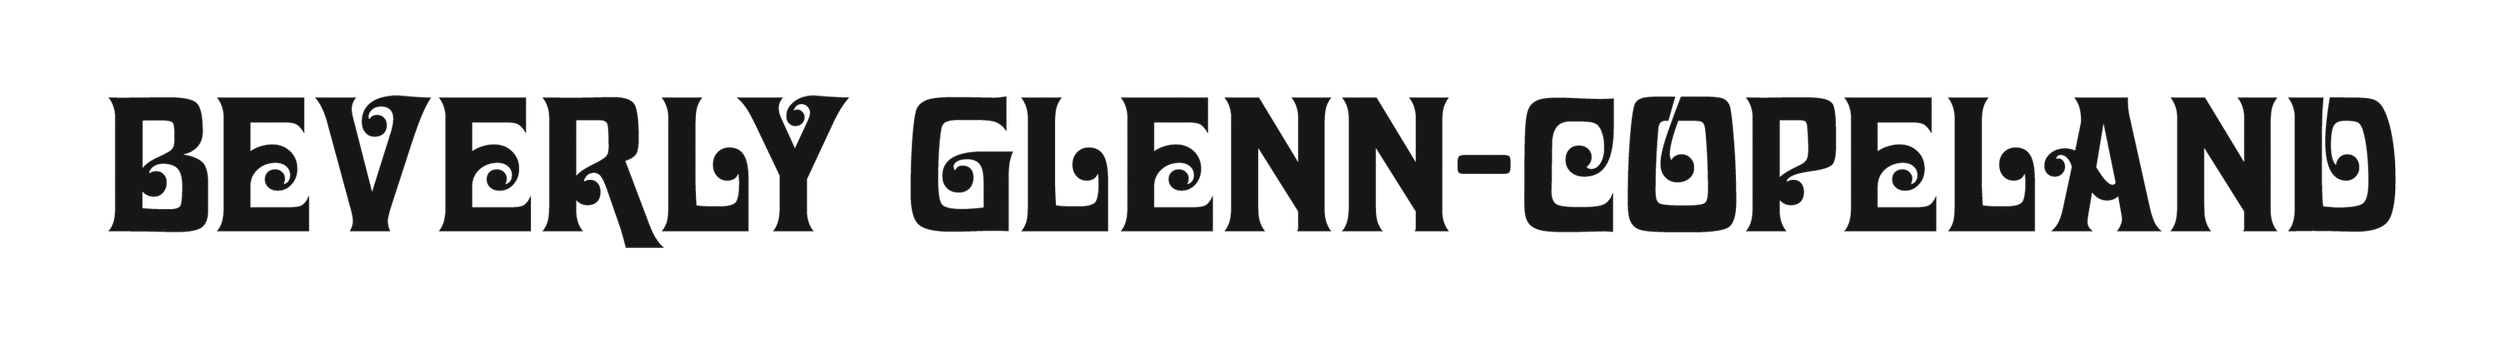 BEVERLY GLENN-COPELAND